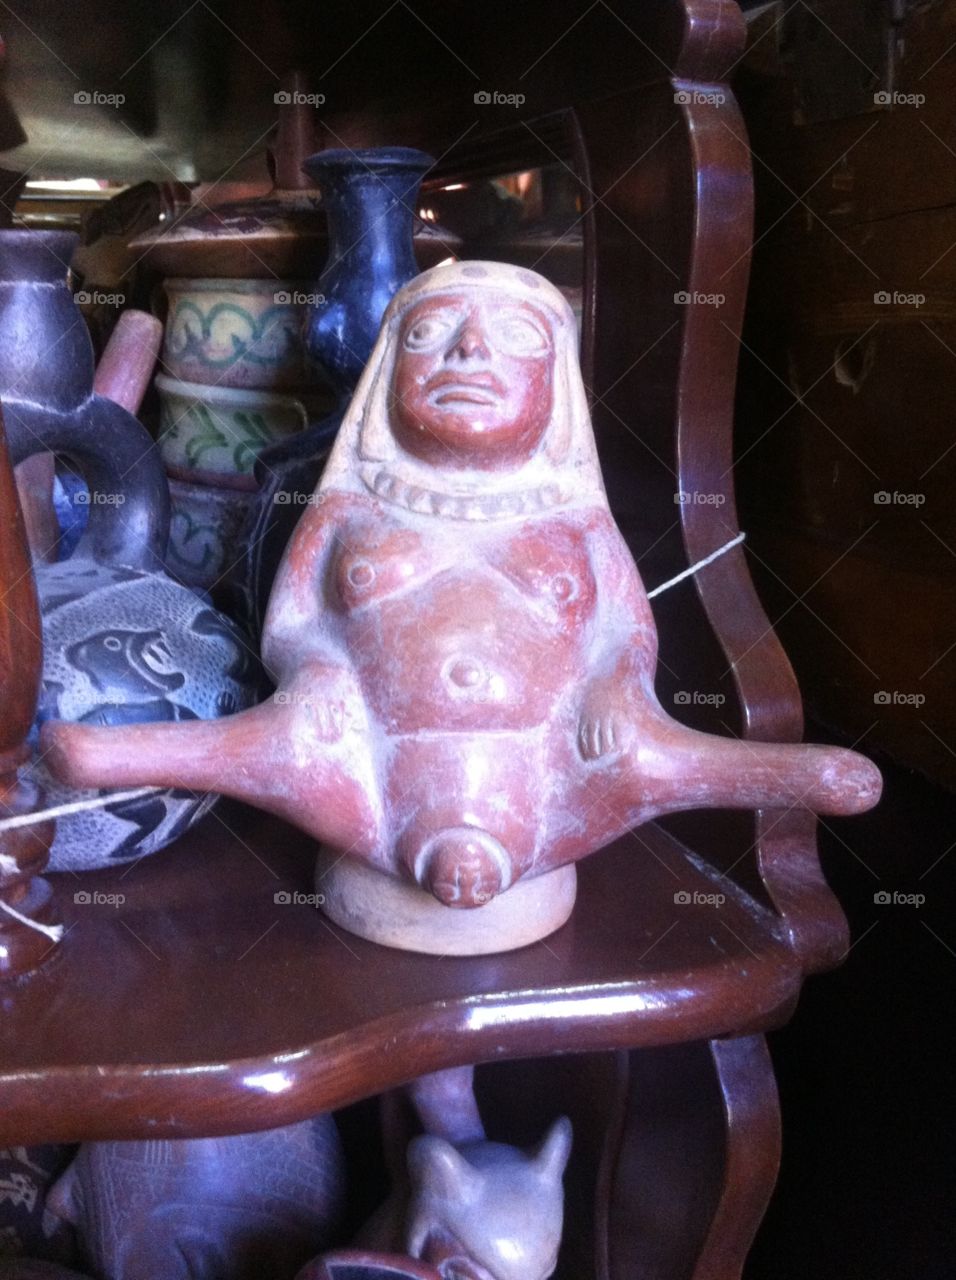 Found in a shop in Peru